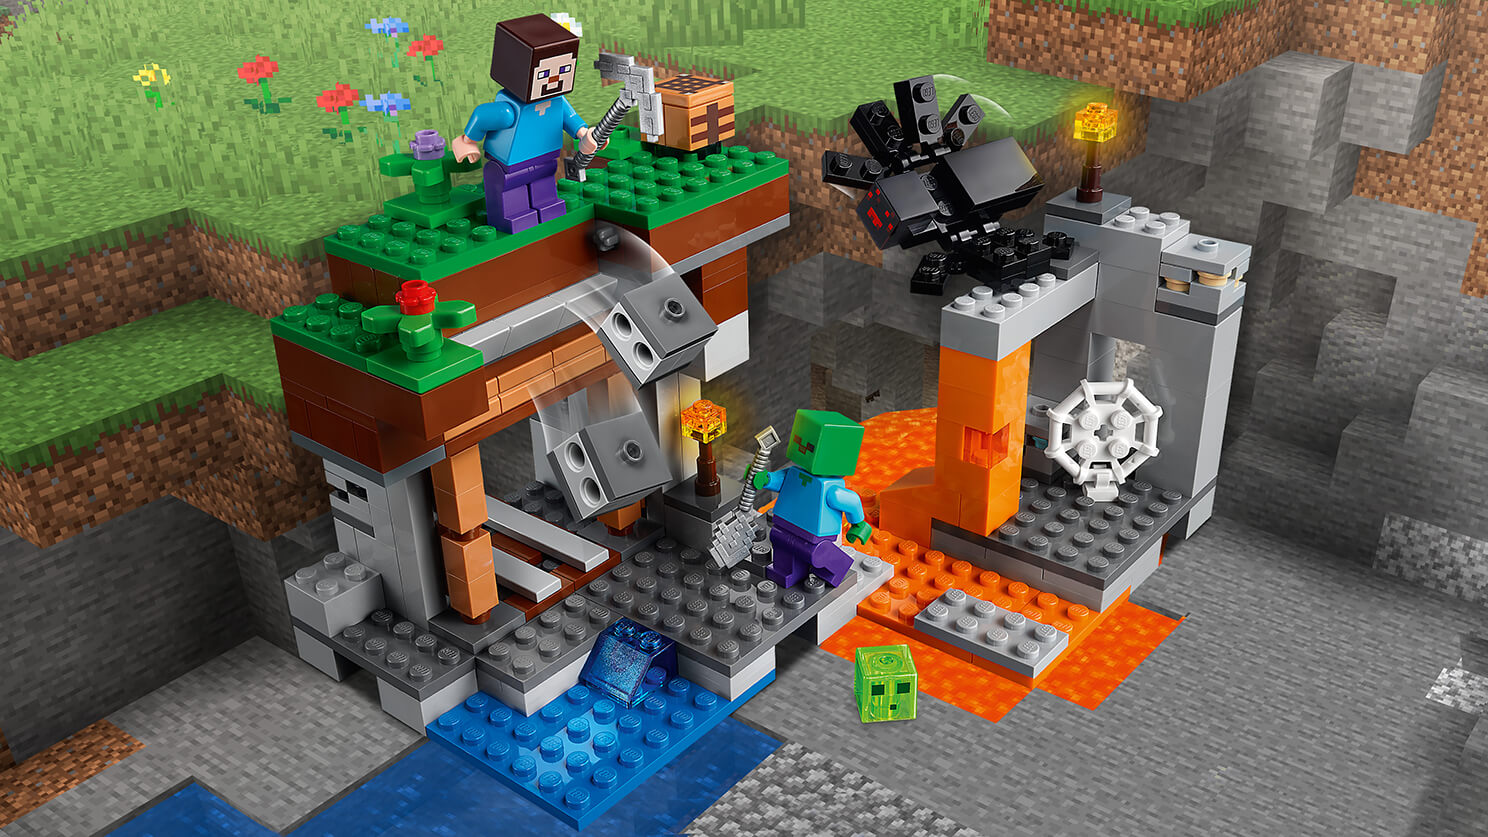 La mine « abandonnée » 21166 - Sets LEGO® Minecraft™ -  pour les  enfants